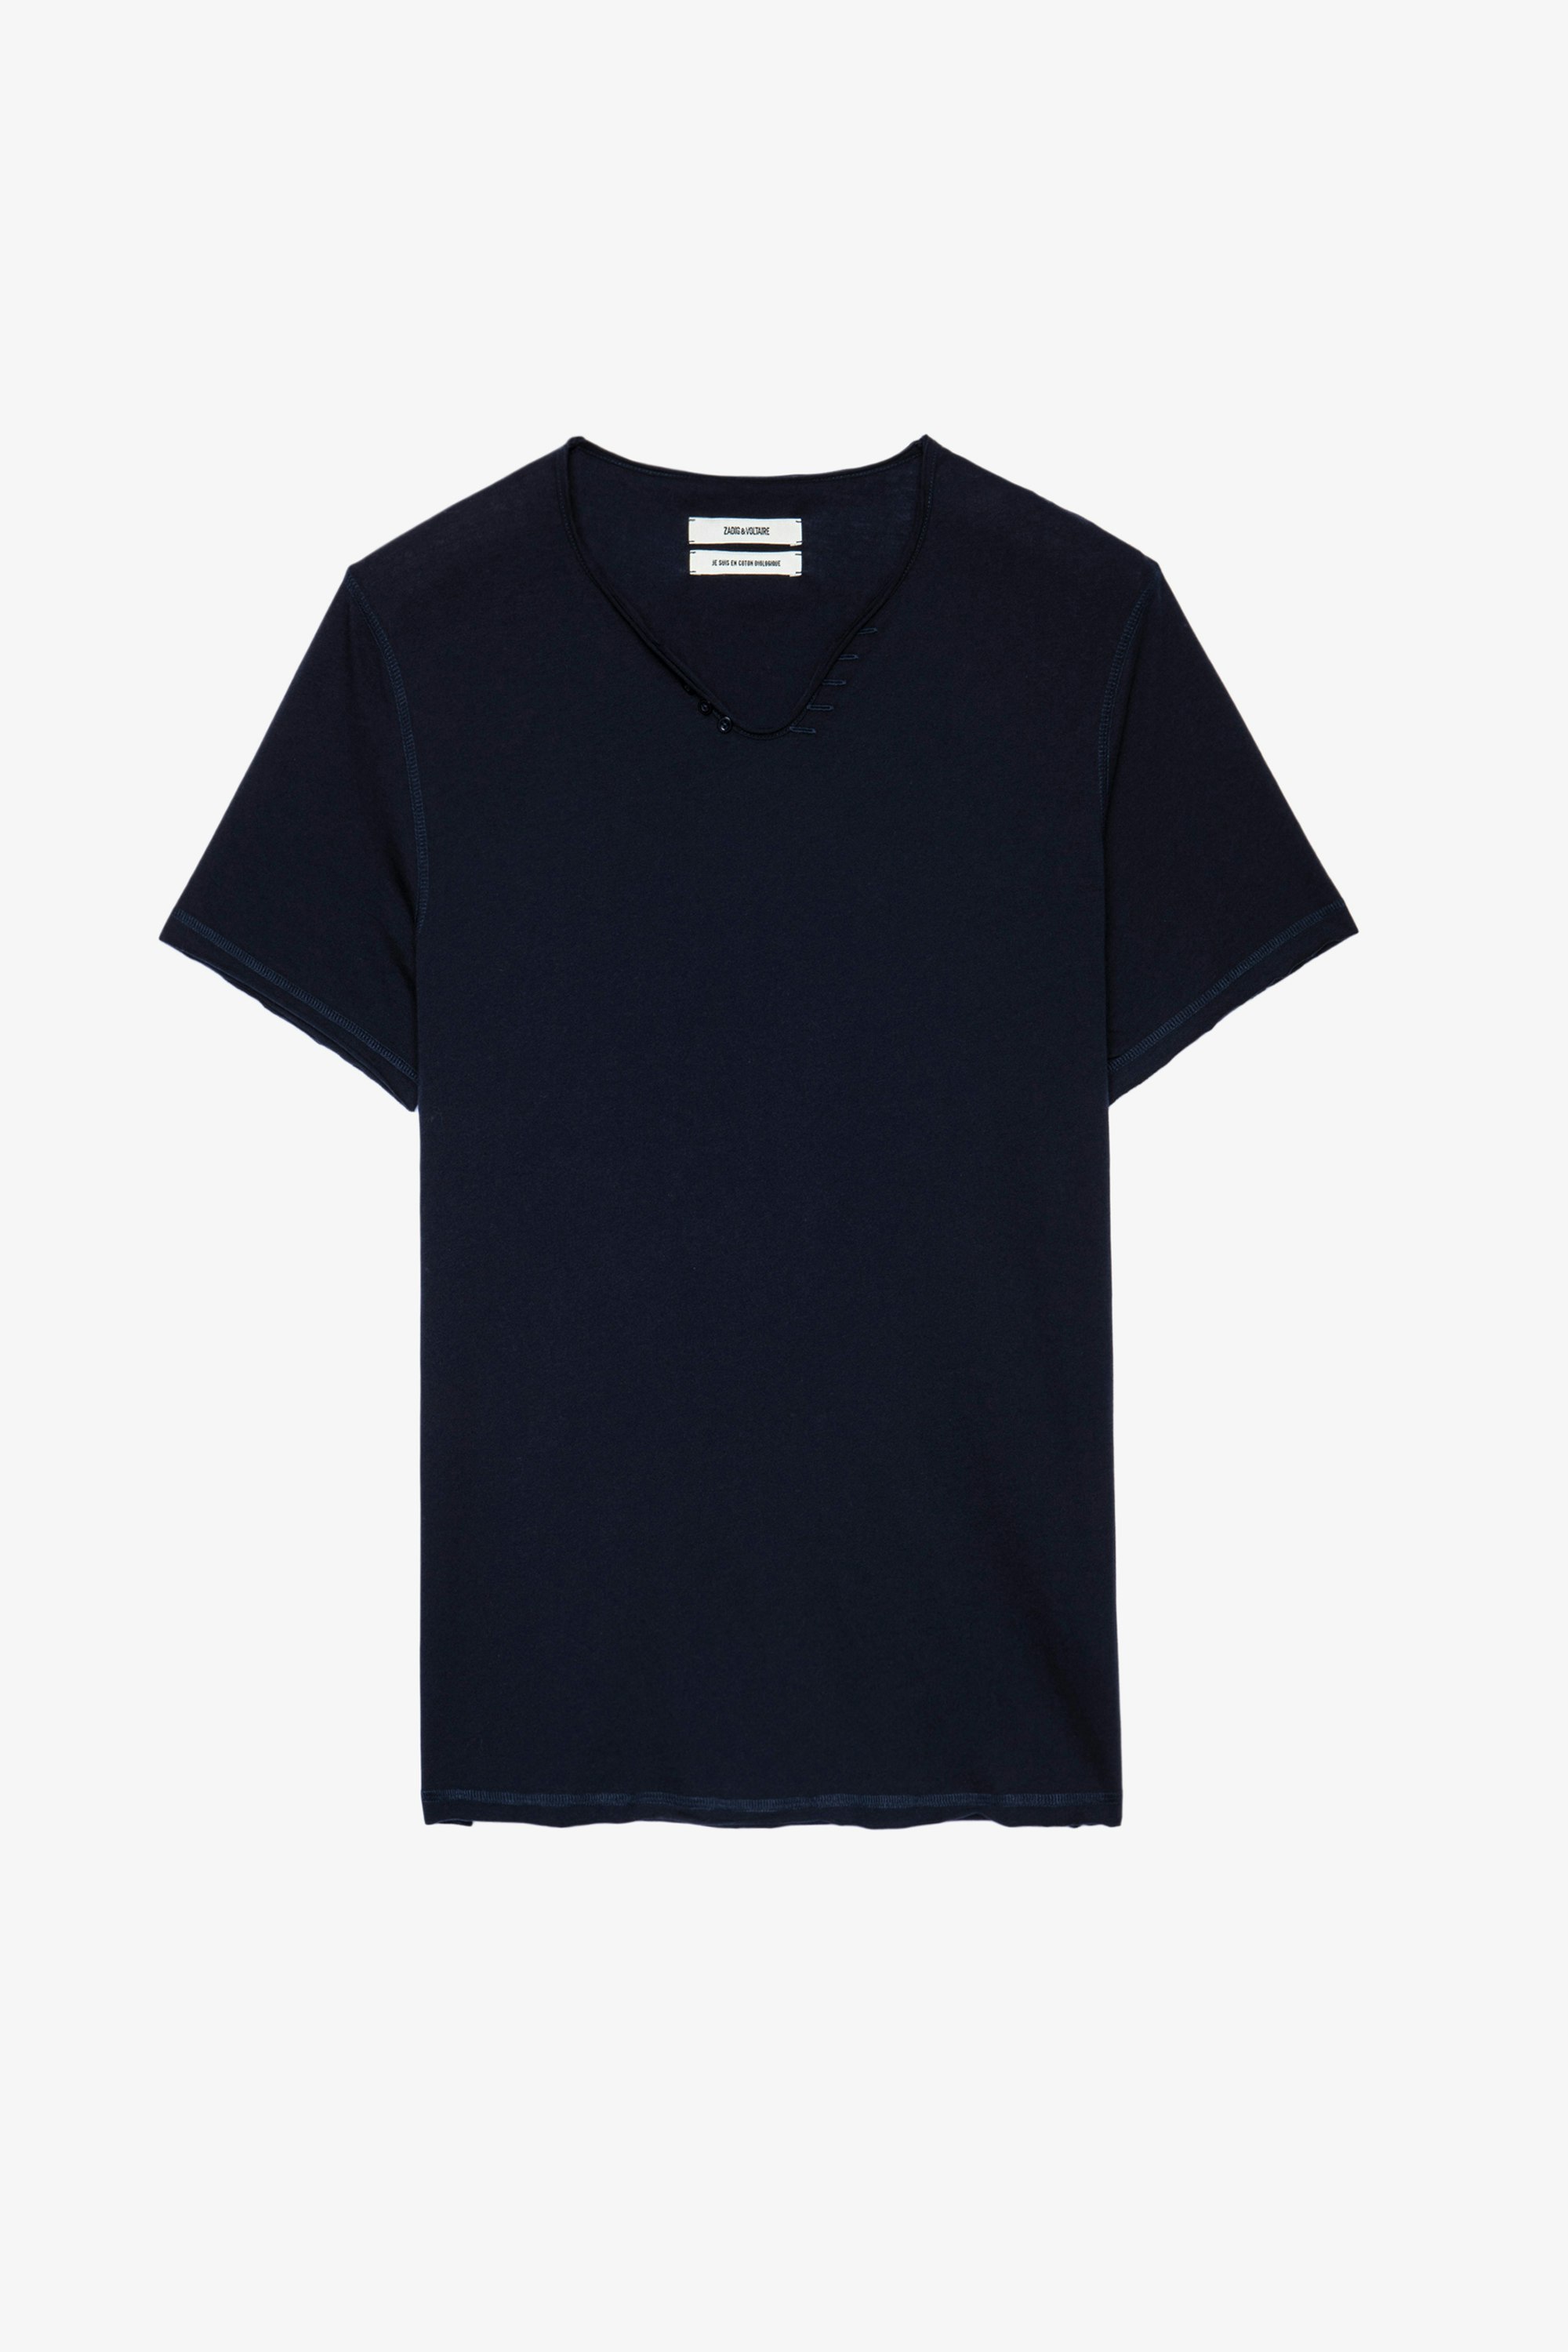 Henley-T-Shirt Monastir - Blaues Herren-T-shirt aus Baumwolle mit Henley-Ausschnitt